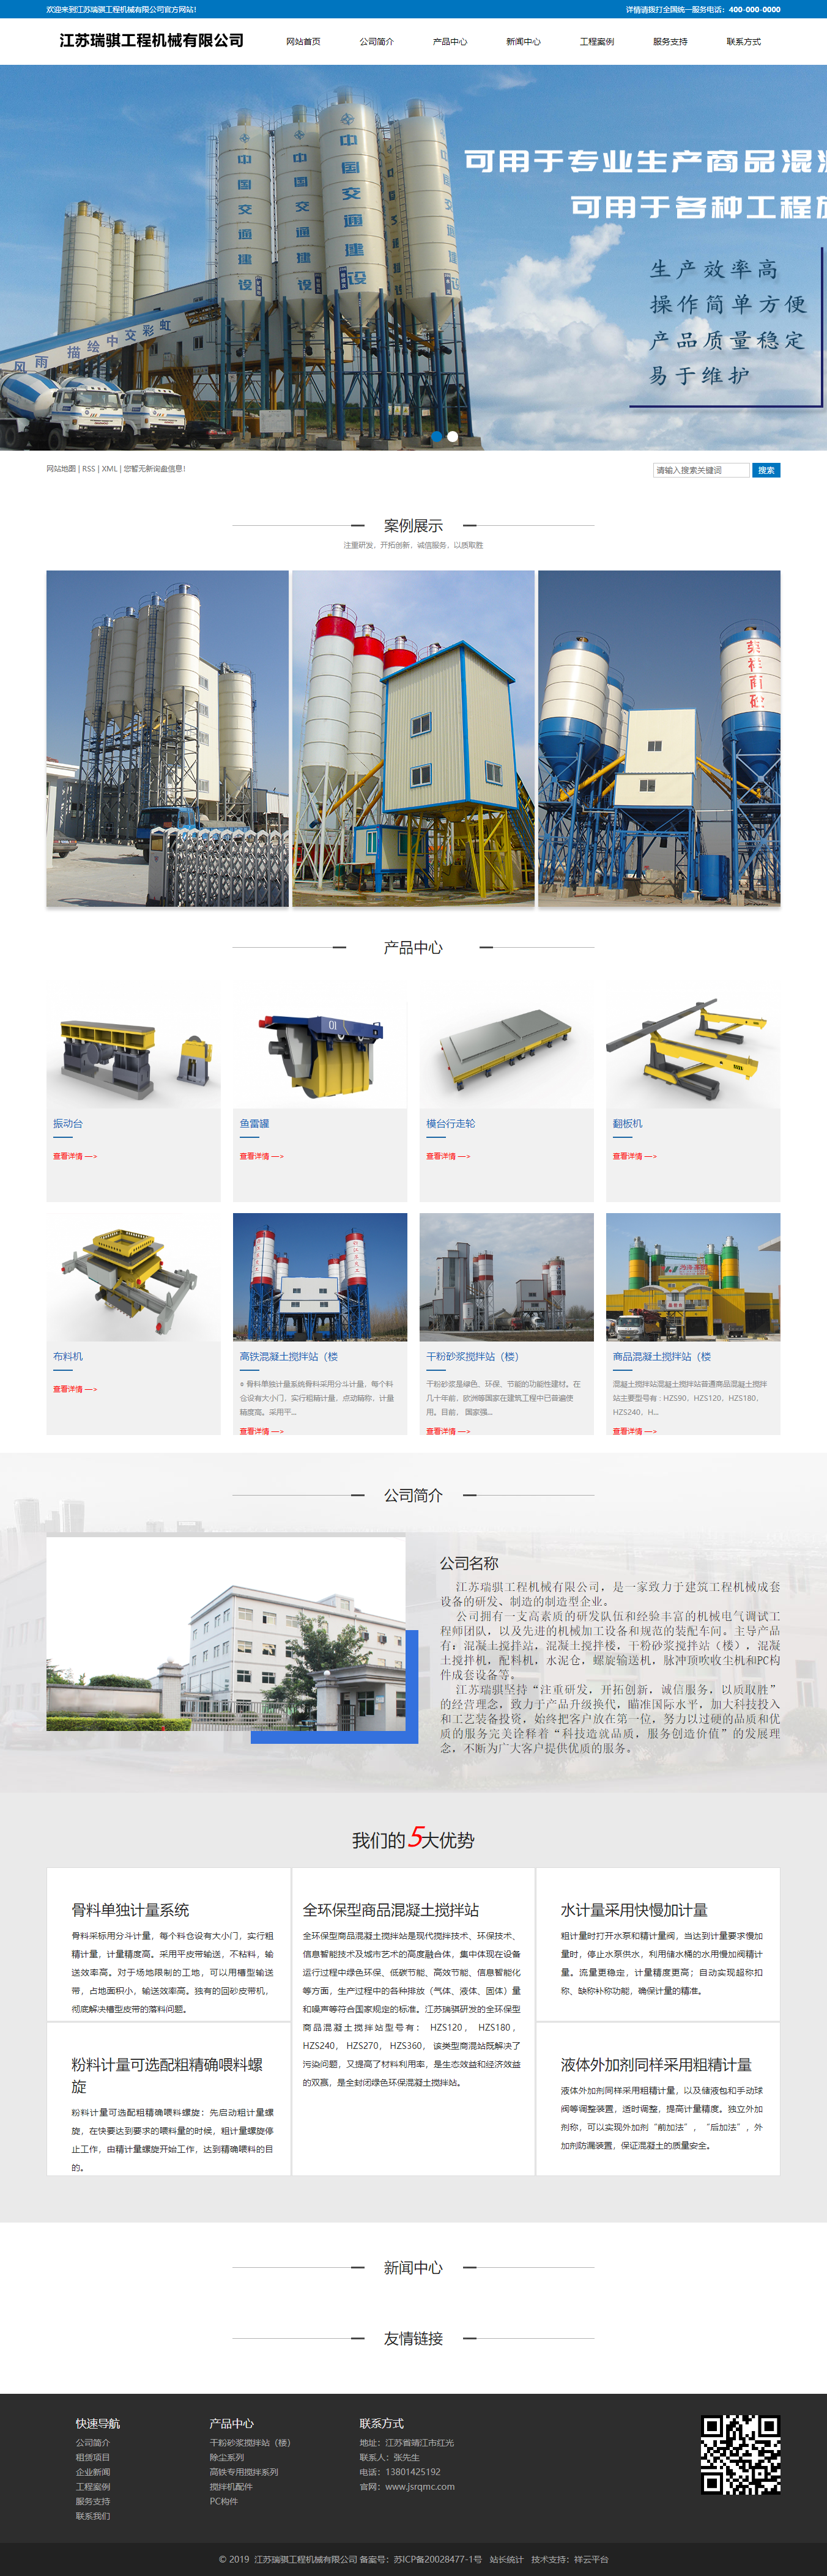 江苏瑞骐工程机械有限公司网站案例